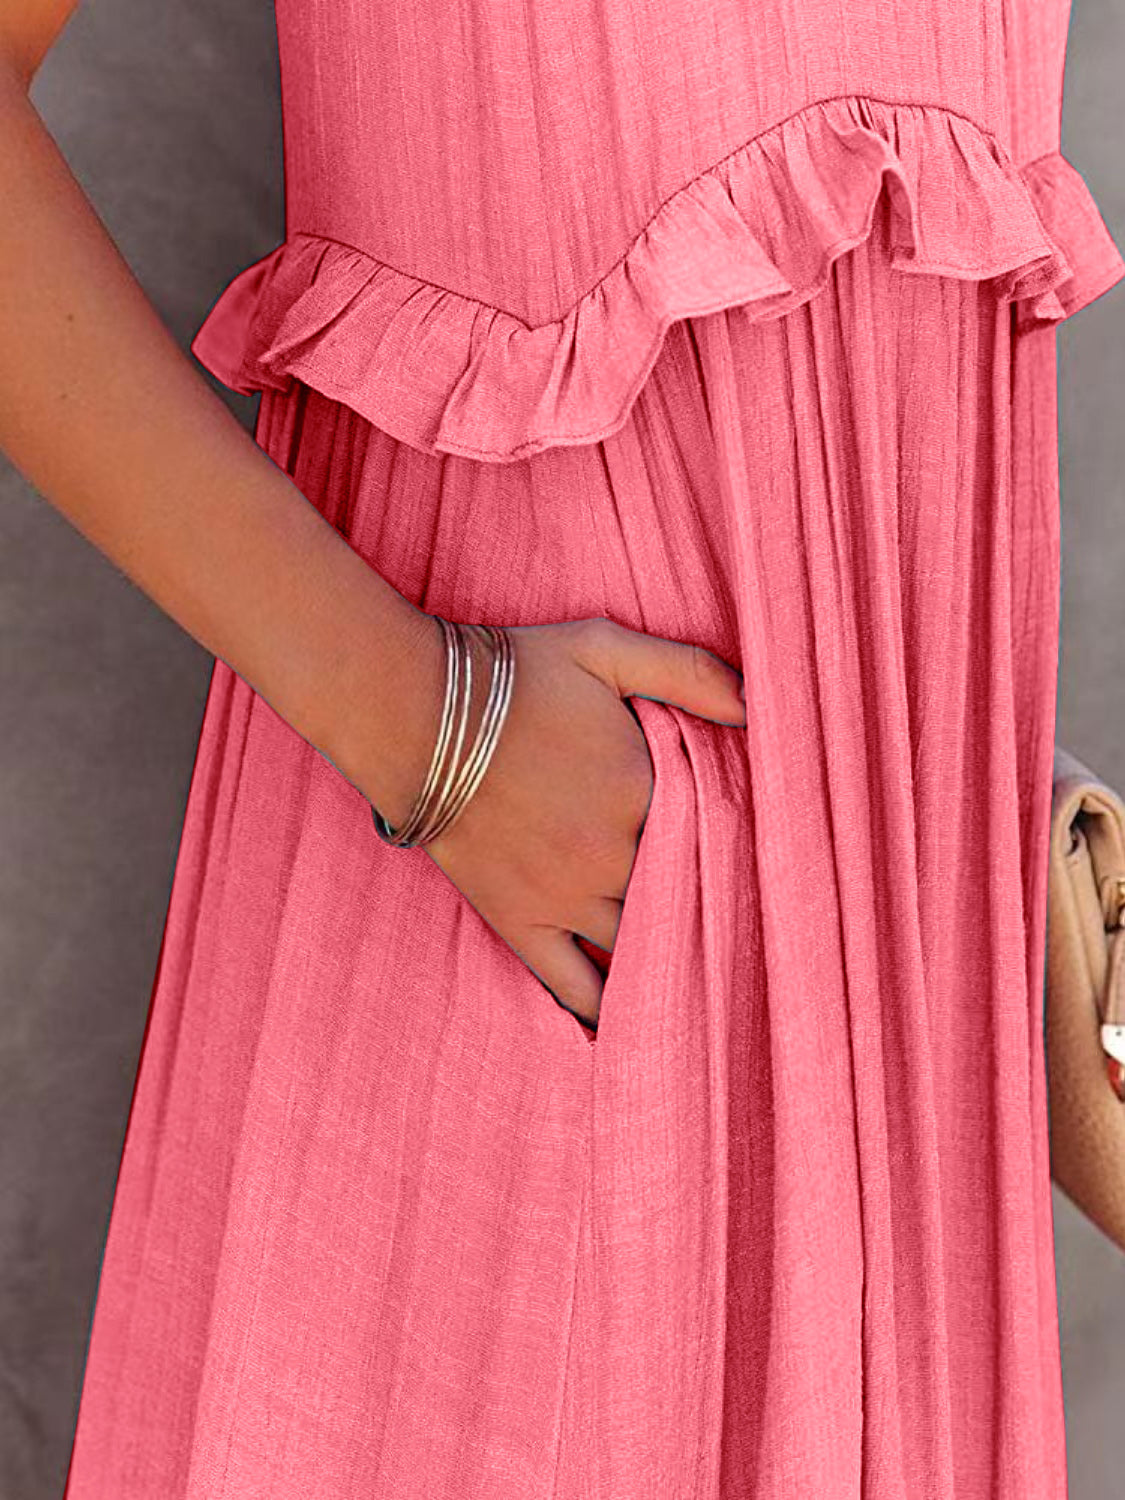 Ruffled Sleeveless Tiered Maxi Dress with Pockets - Tigbuls Variety Fashion